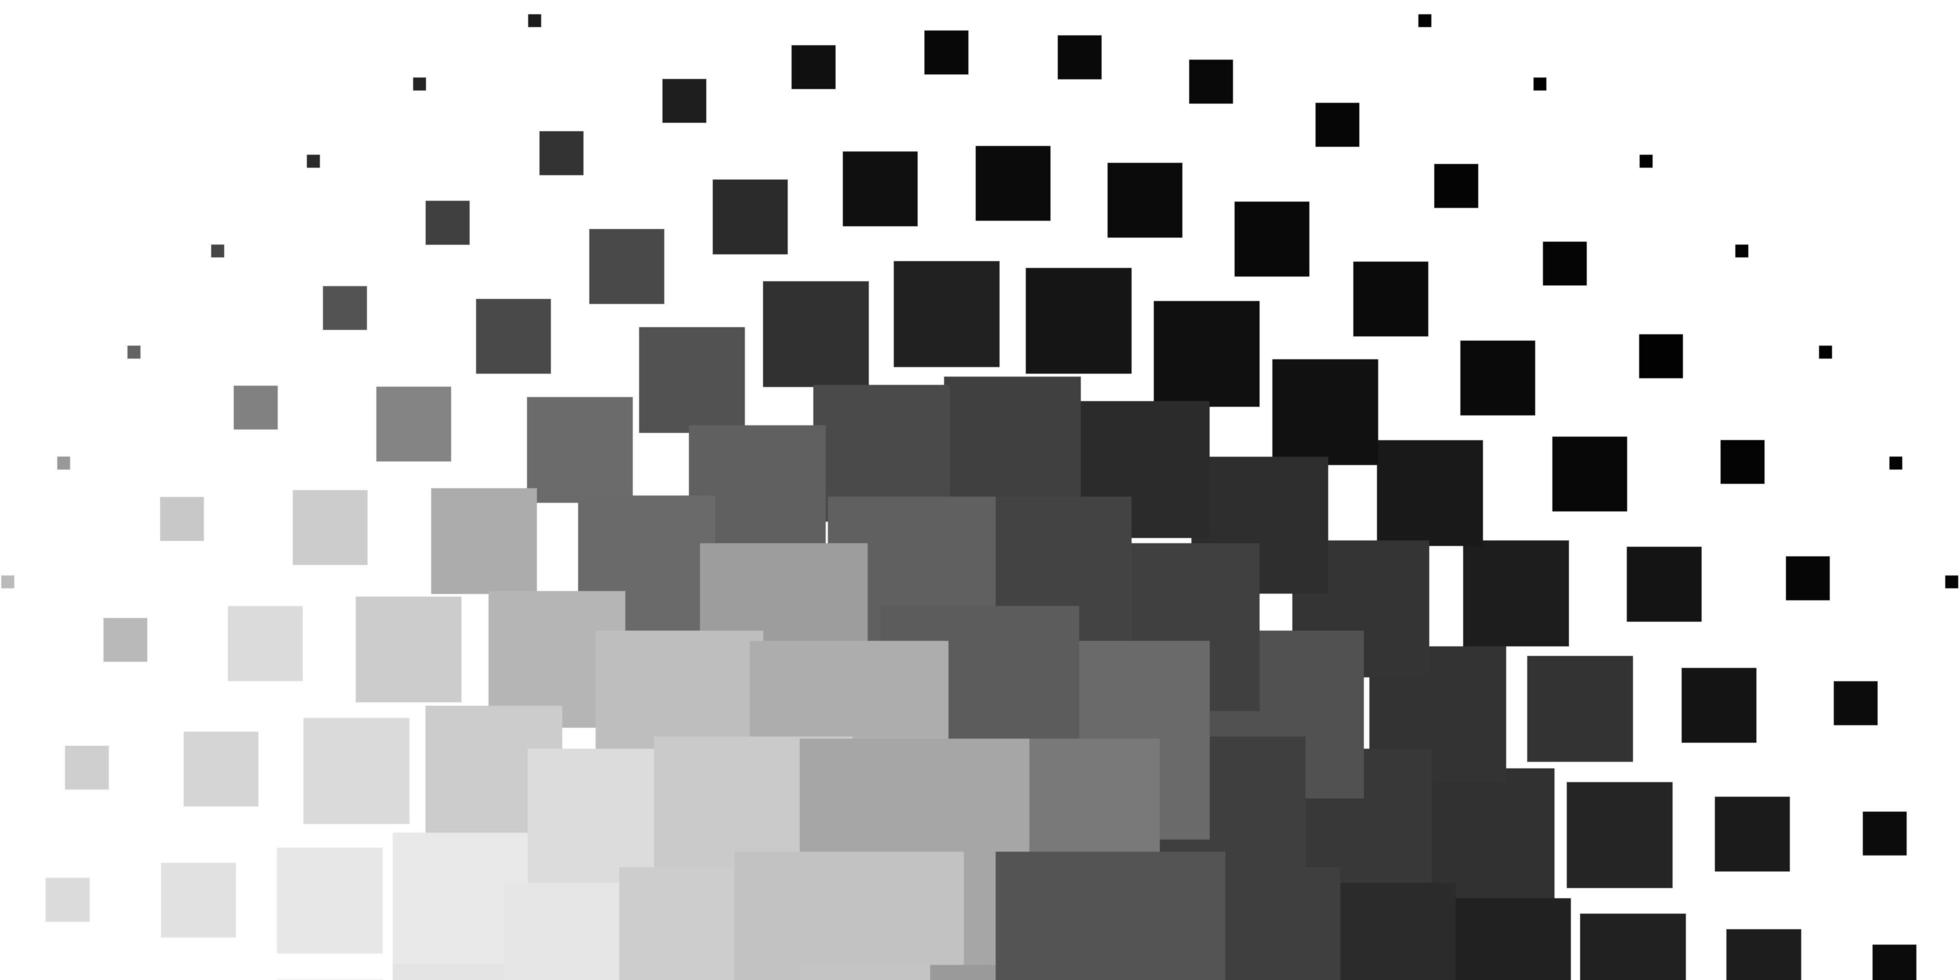 sfondo vettoriale grigio chiaro con rettangoli.